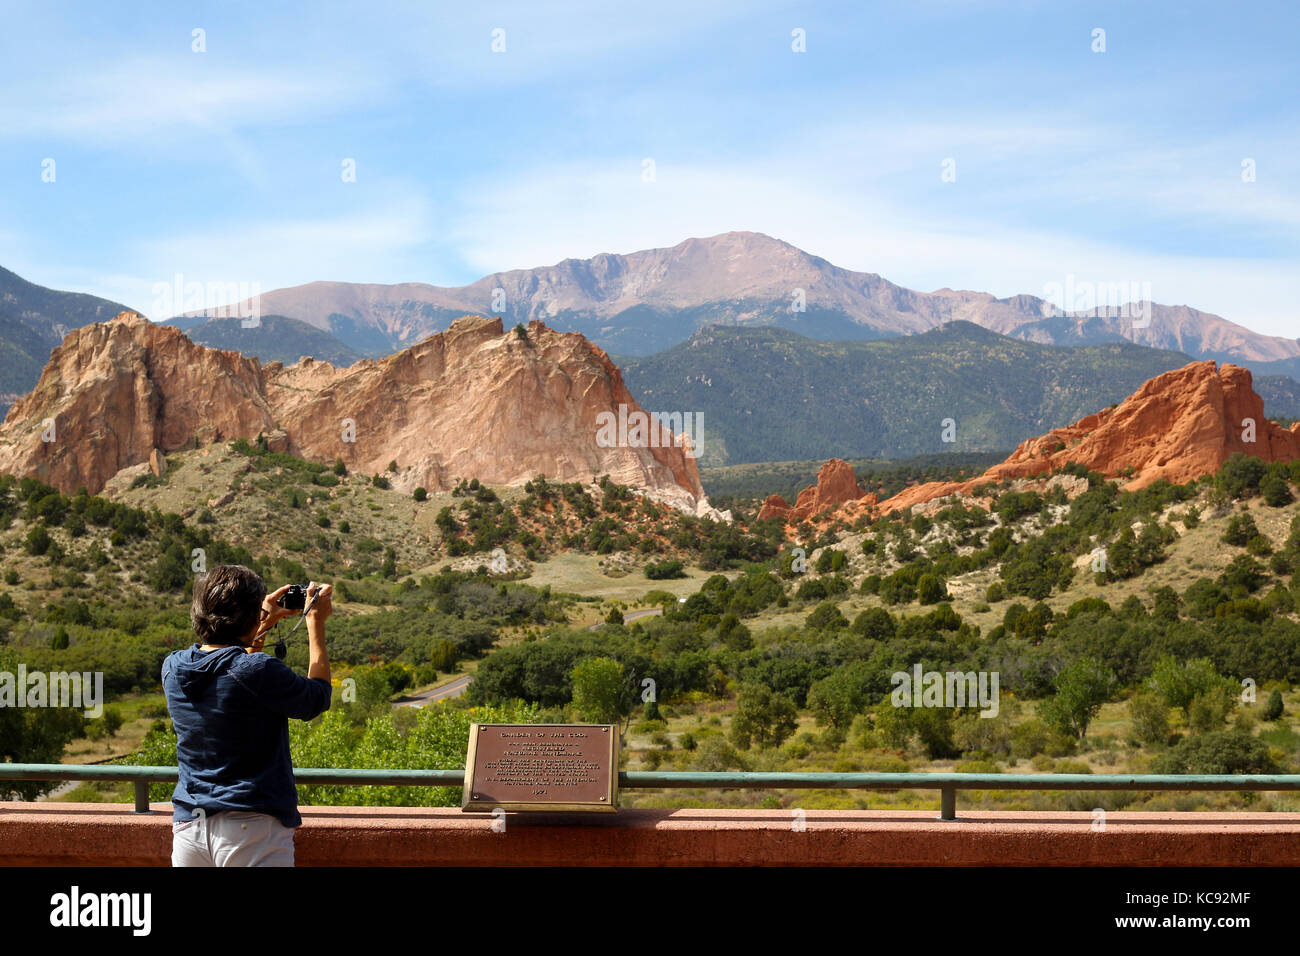 Garden of the Gods, a national landmark and a city park in Colorado Springs, Colorado. Stock Photo